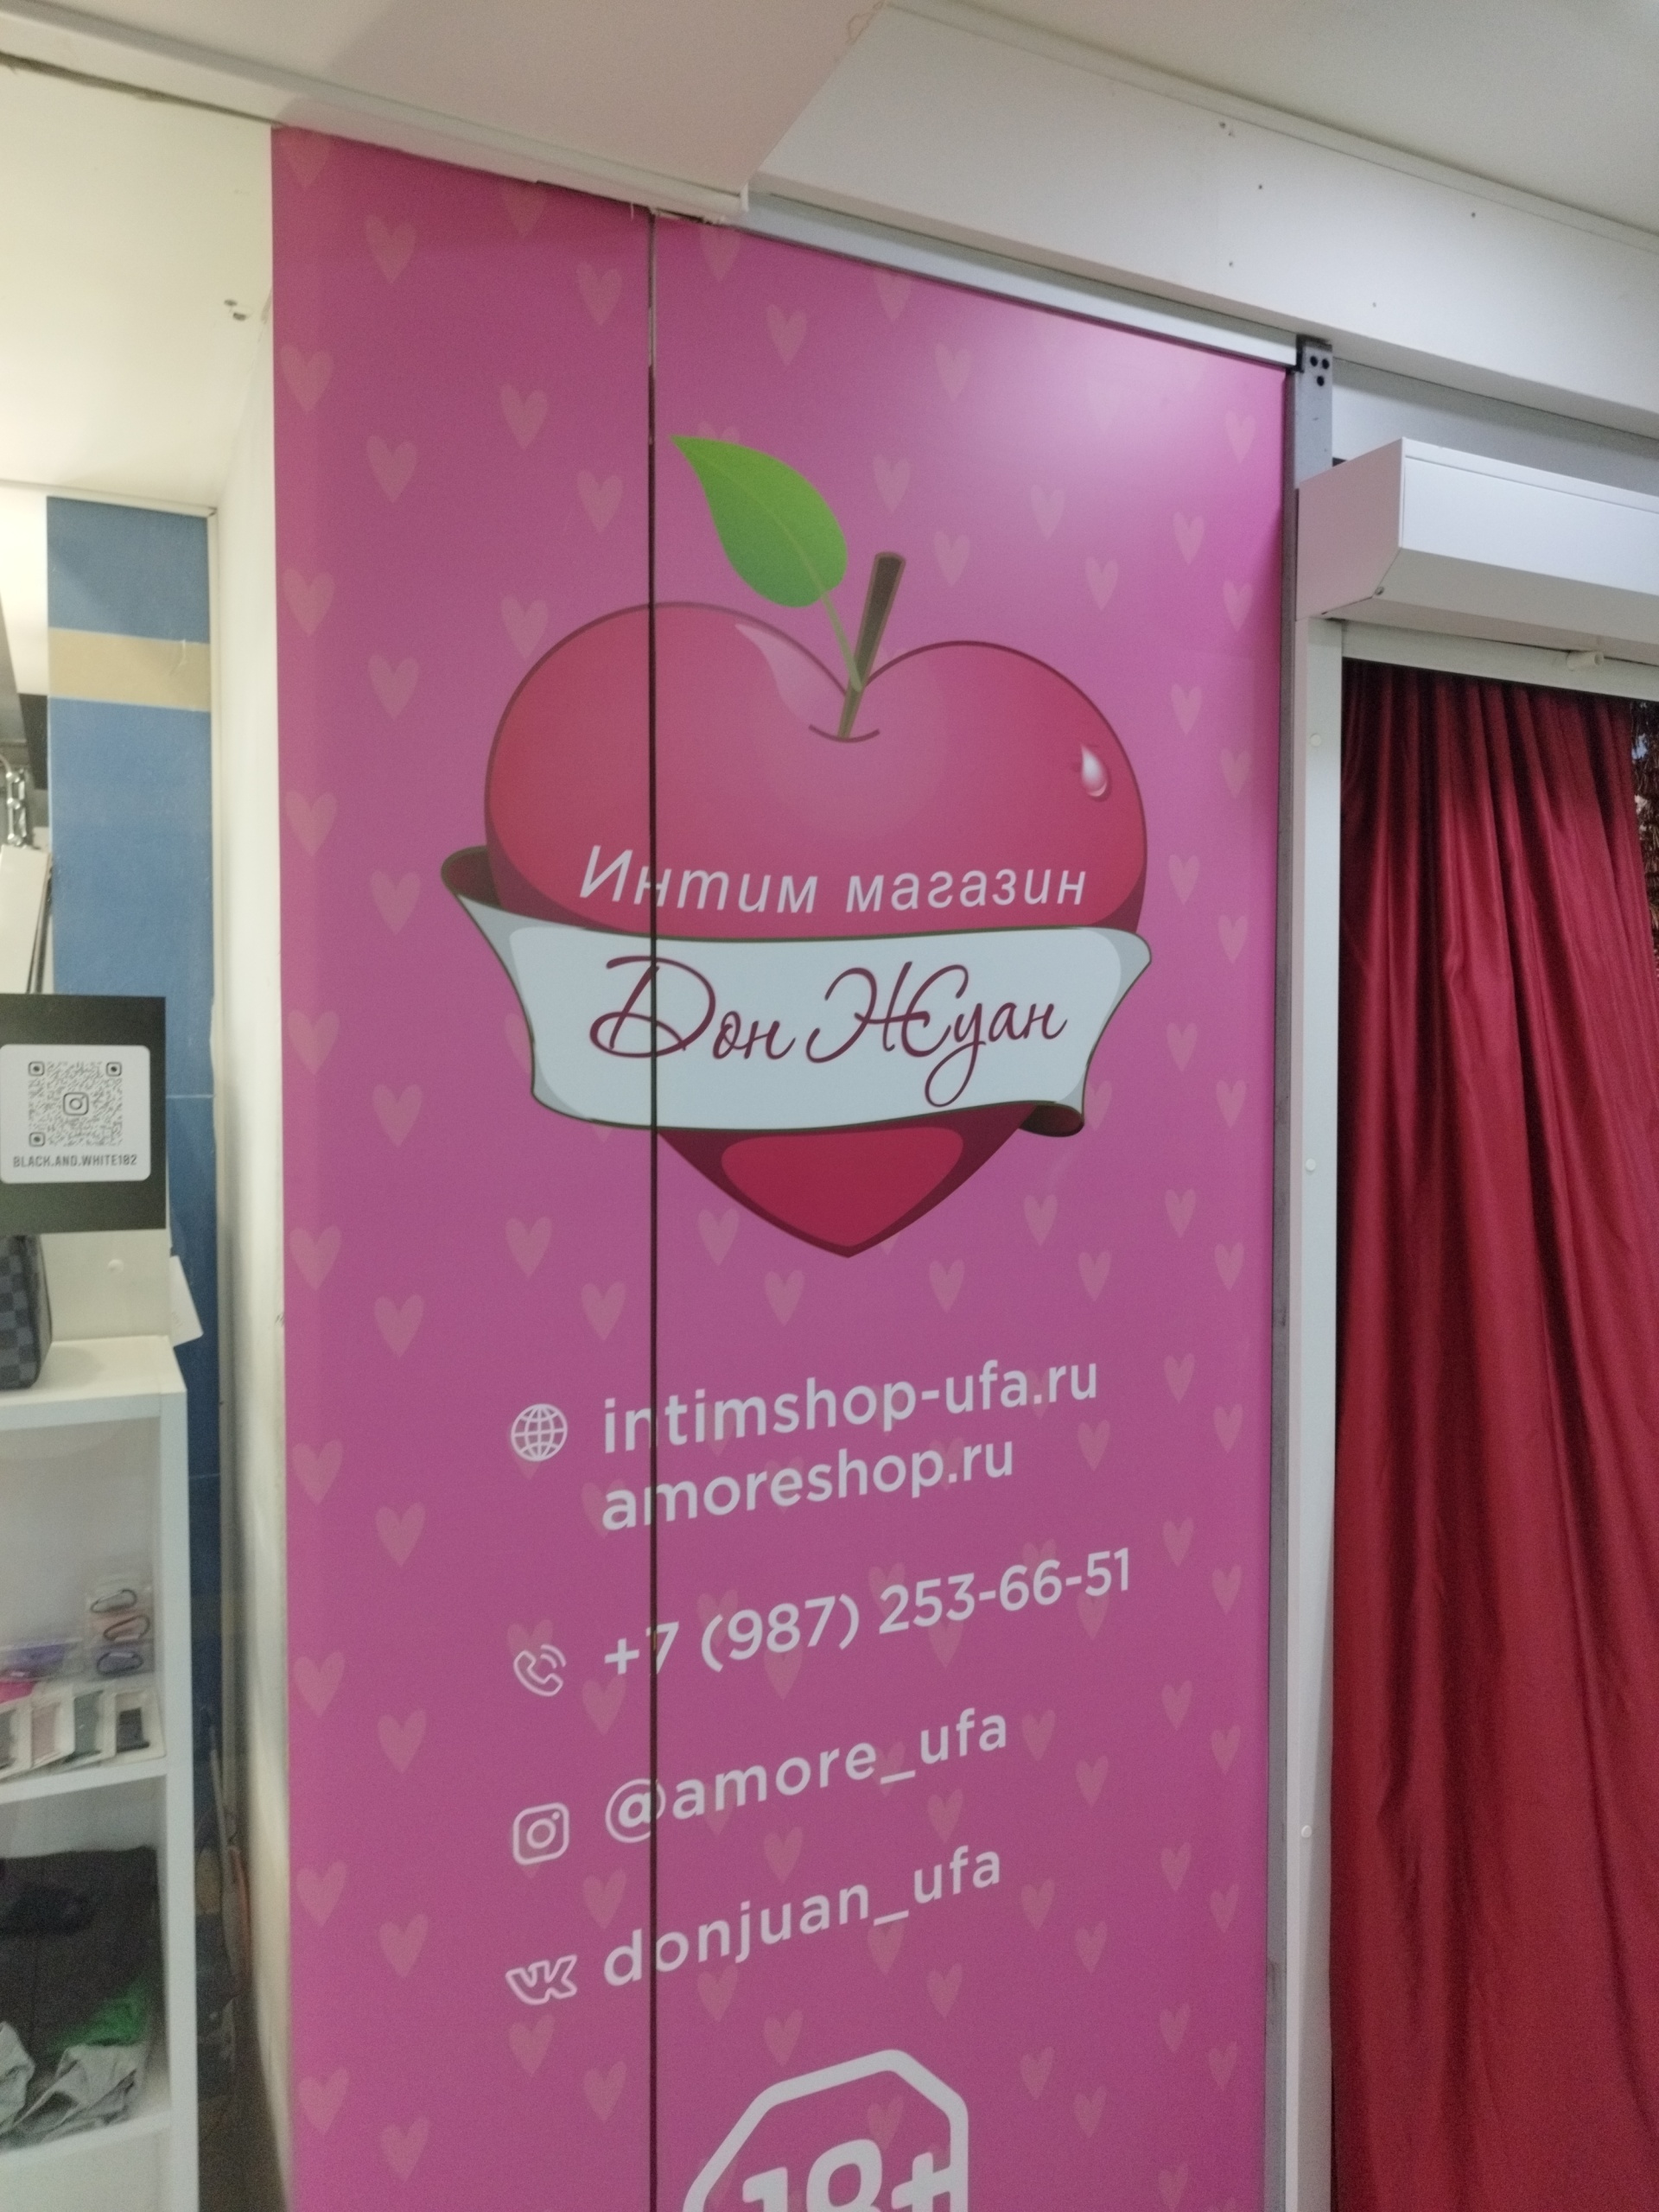 Интим-магазин ДонЖуан - все магазины Уфы | nordwestspb.ru (Уфа и РБ)